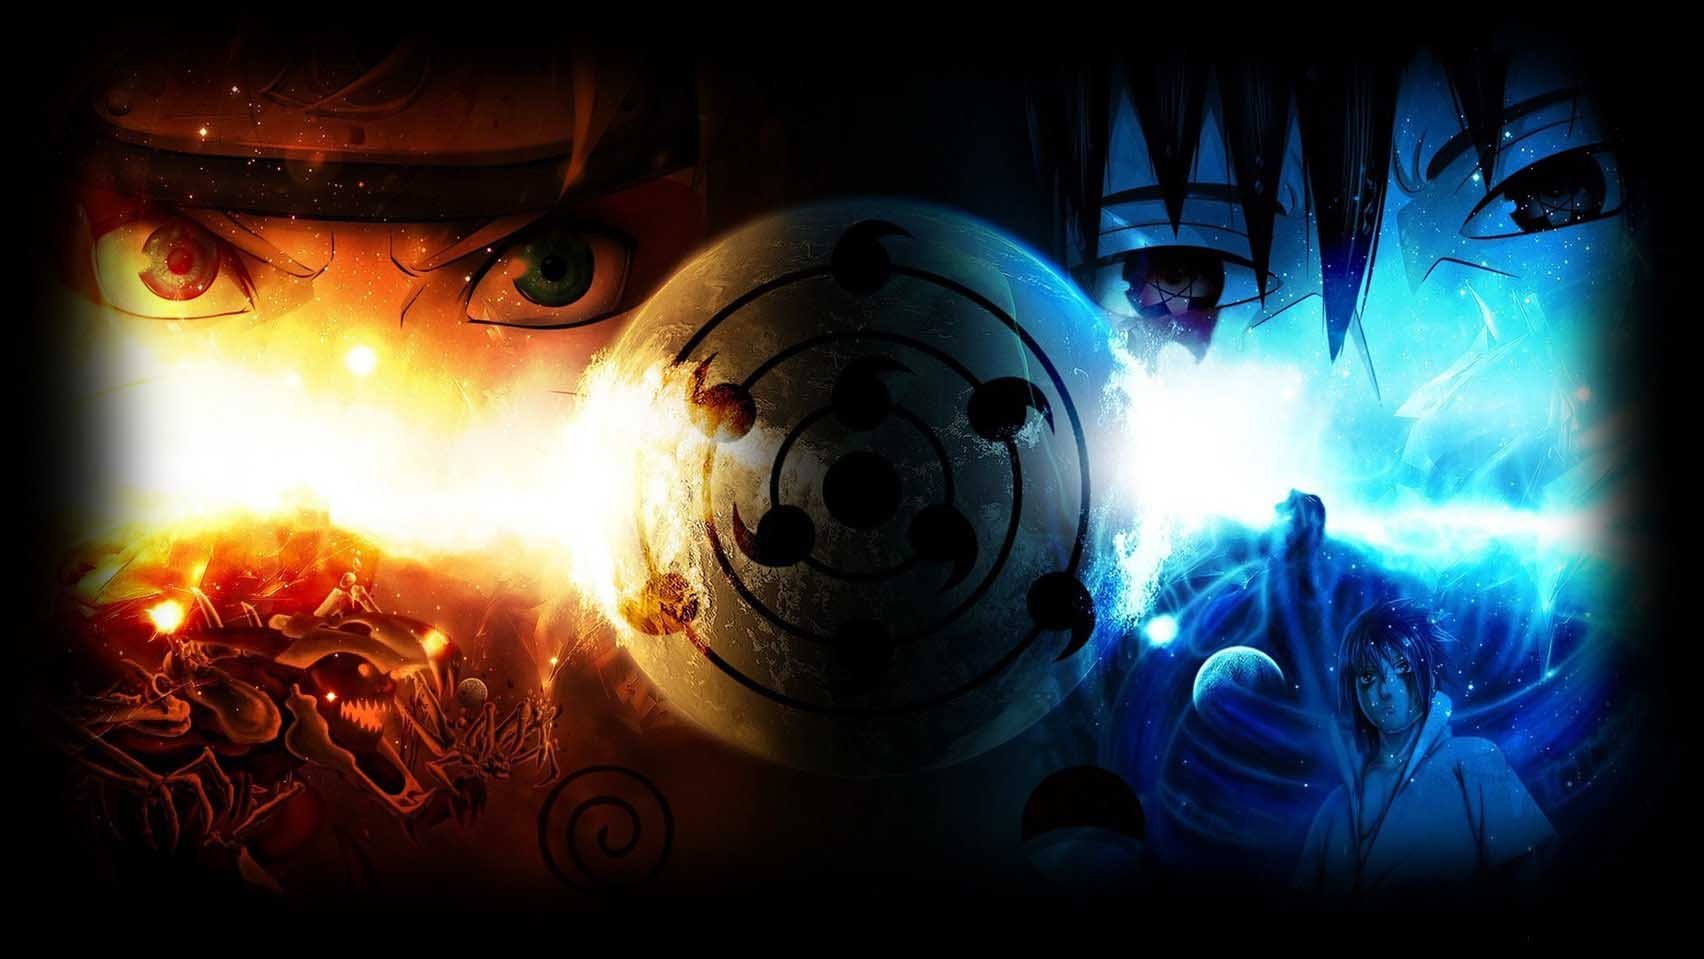 ნარუტო სეზონი 2 / Naruto Shippuden Season 2 ქართულად